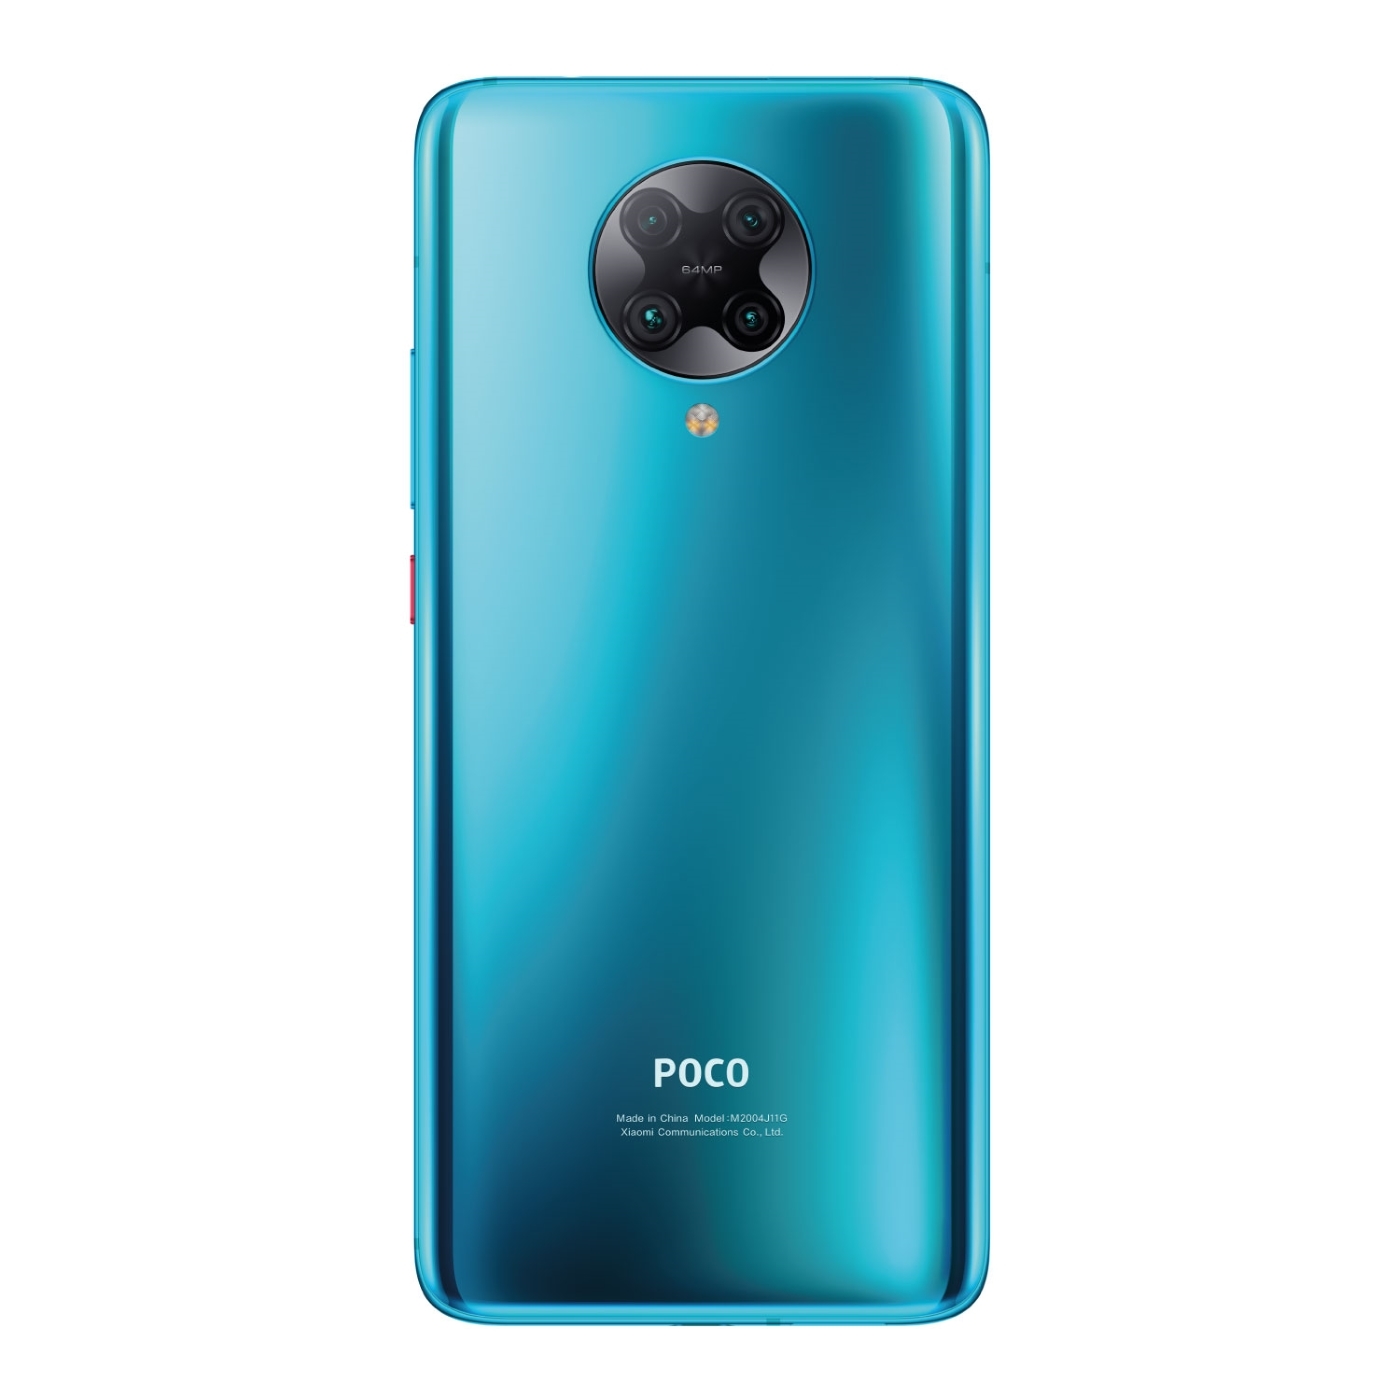 Celular XIAOMI POCOPHONE F2 PRO 256GB Azul- Neon Blue